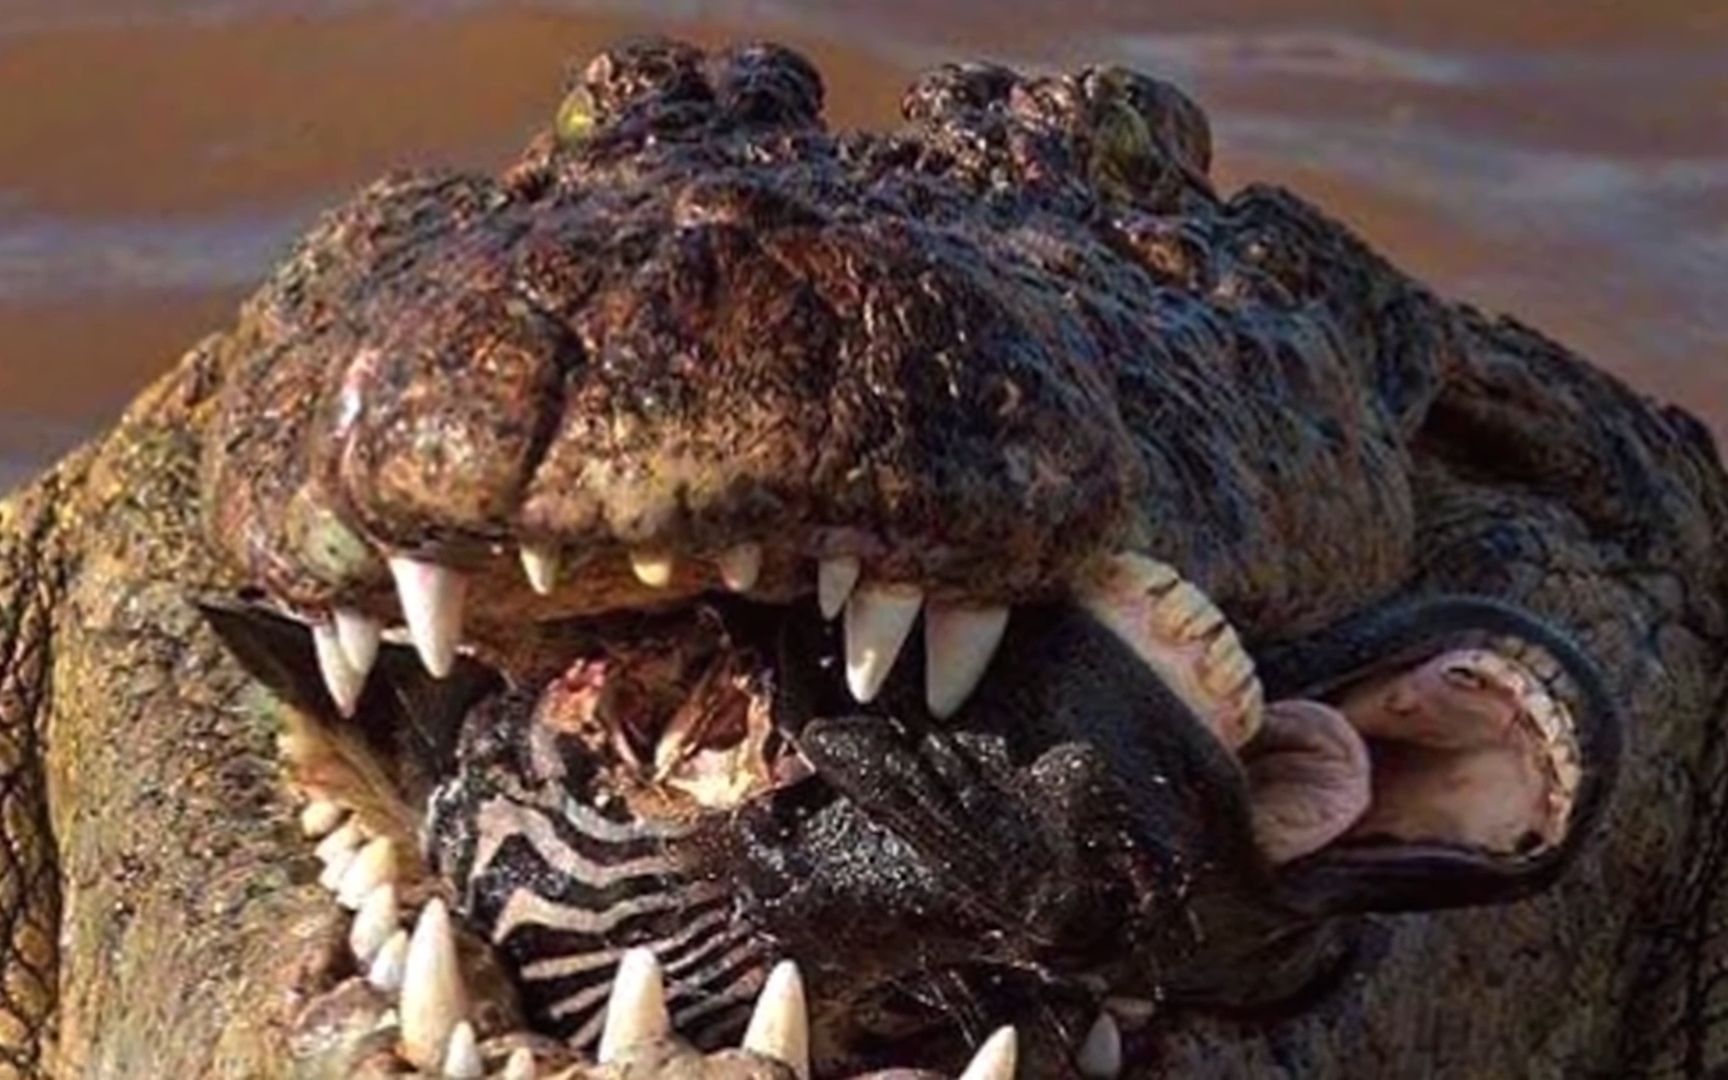 鳄鱼捕食,猎物只要被它血盆大口咬住就不能逃脱,看看鳄鱼都吃些啥?